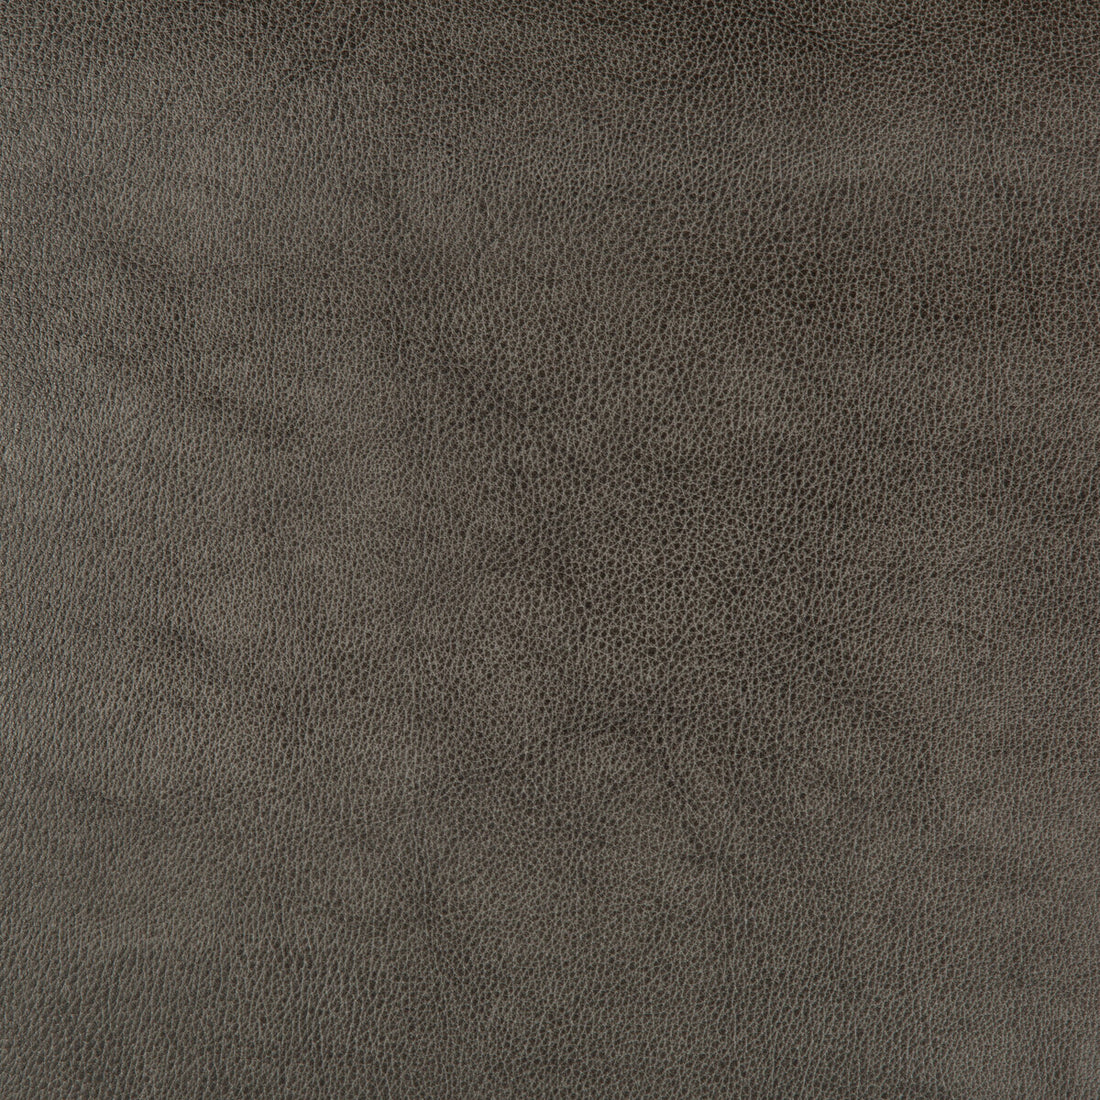 Kravet Design fabric in dust-21 color - pattern DUST.21.0 - by Kravet Design